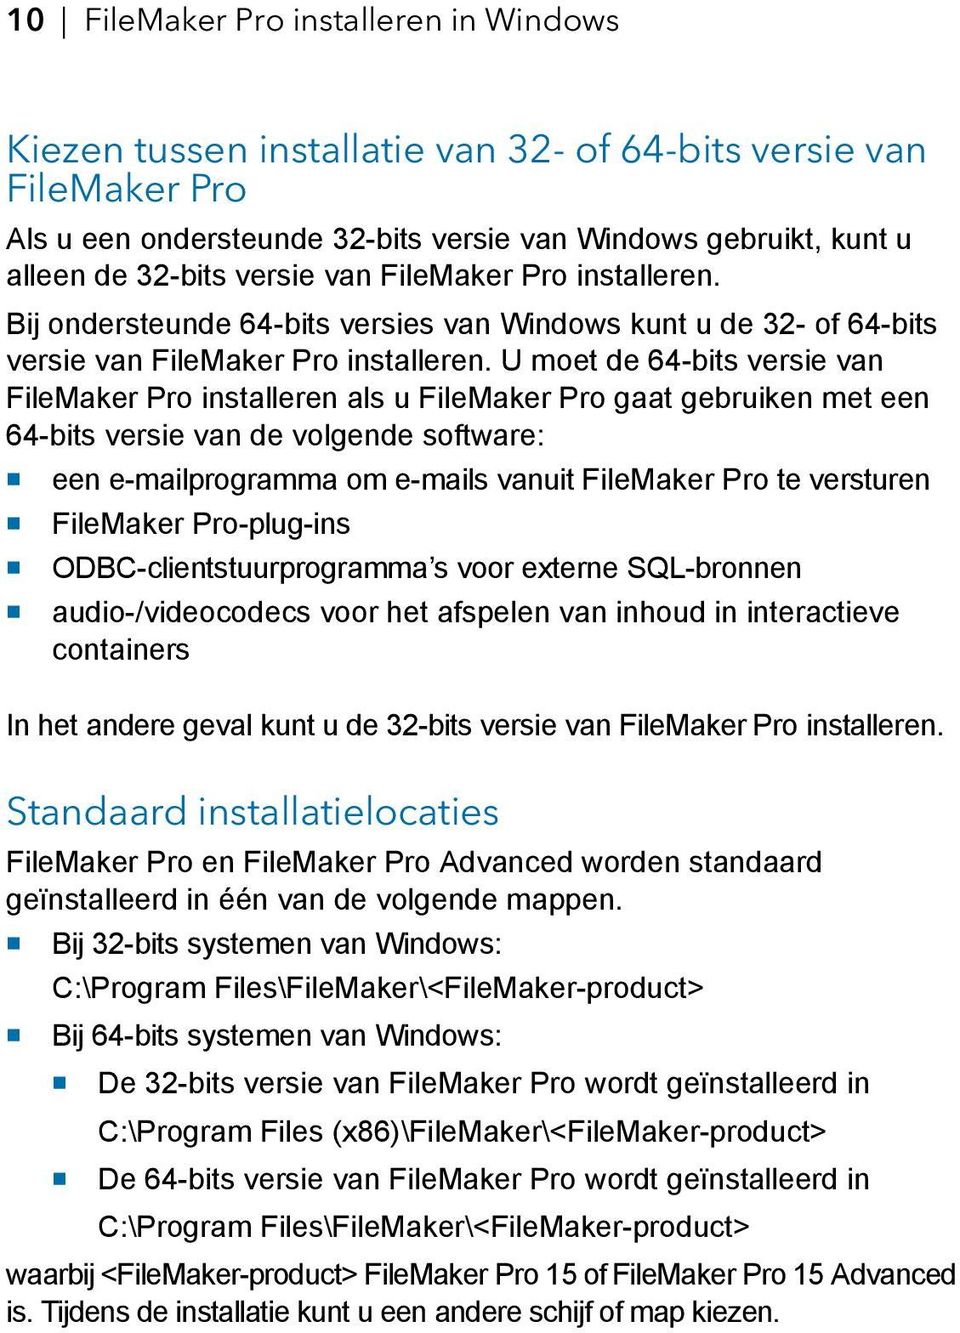 U moet de 64-bits versie van FileMaker Pro installeren als u FileMaker Pro gaat gebruiken met een 64-bits versie van de volgende software: 1 een e-mailprogramma om e-mails vanuit FileMaker Pro te